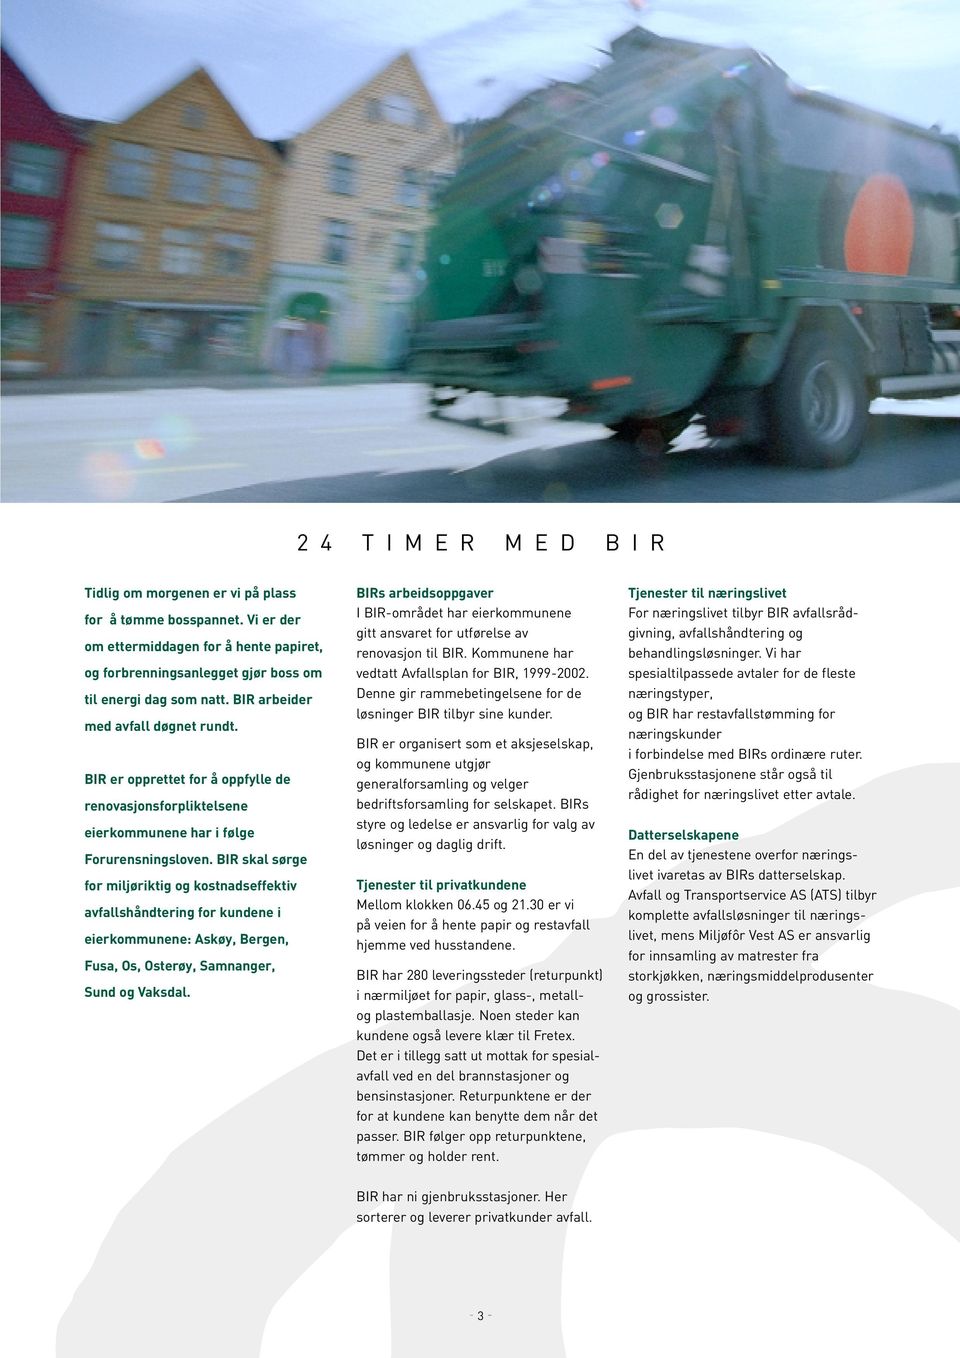 BIR skal sørge for miljøriktig og kostnadseffektiv avfallshåndtering for kundene i eierkommunene: Askøy, Bergen, Fusa, Os, Osterøy, Samnanger, Sund og Vaksdal.